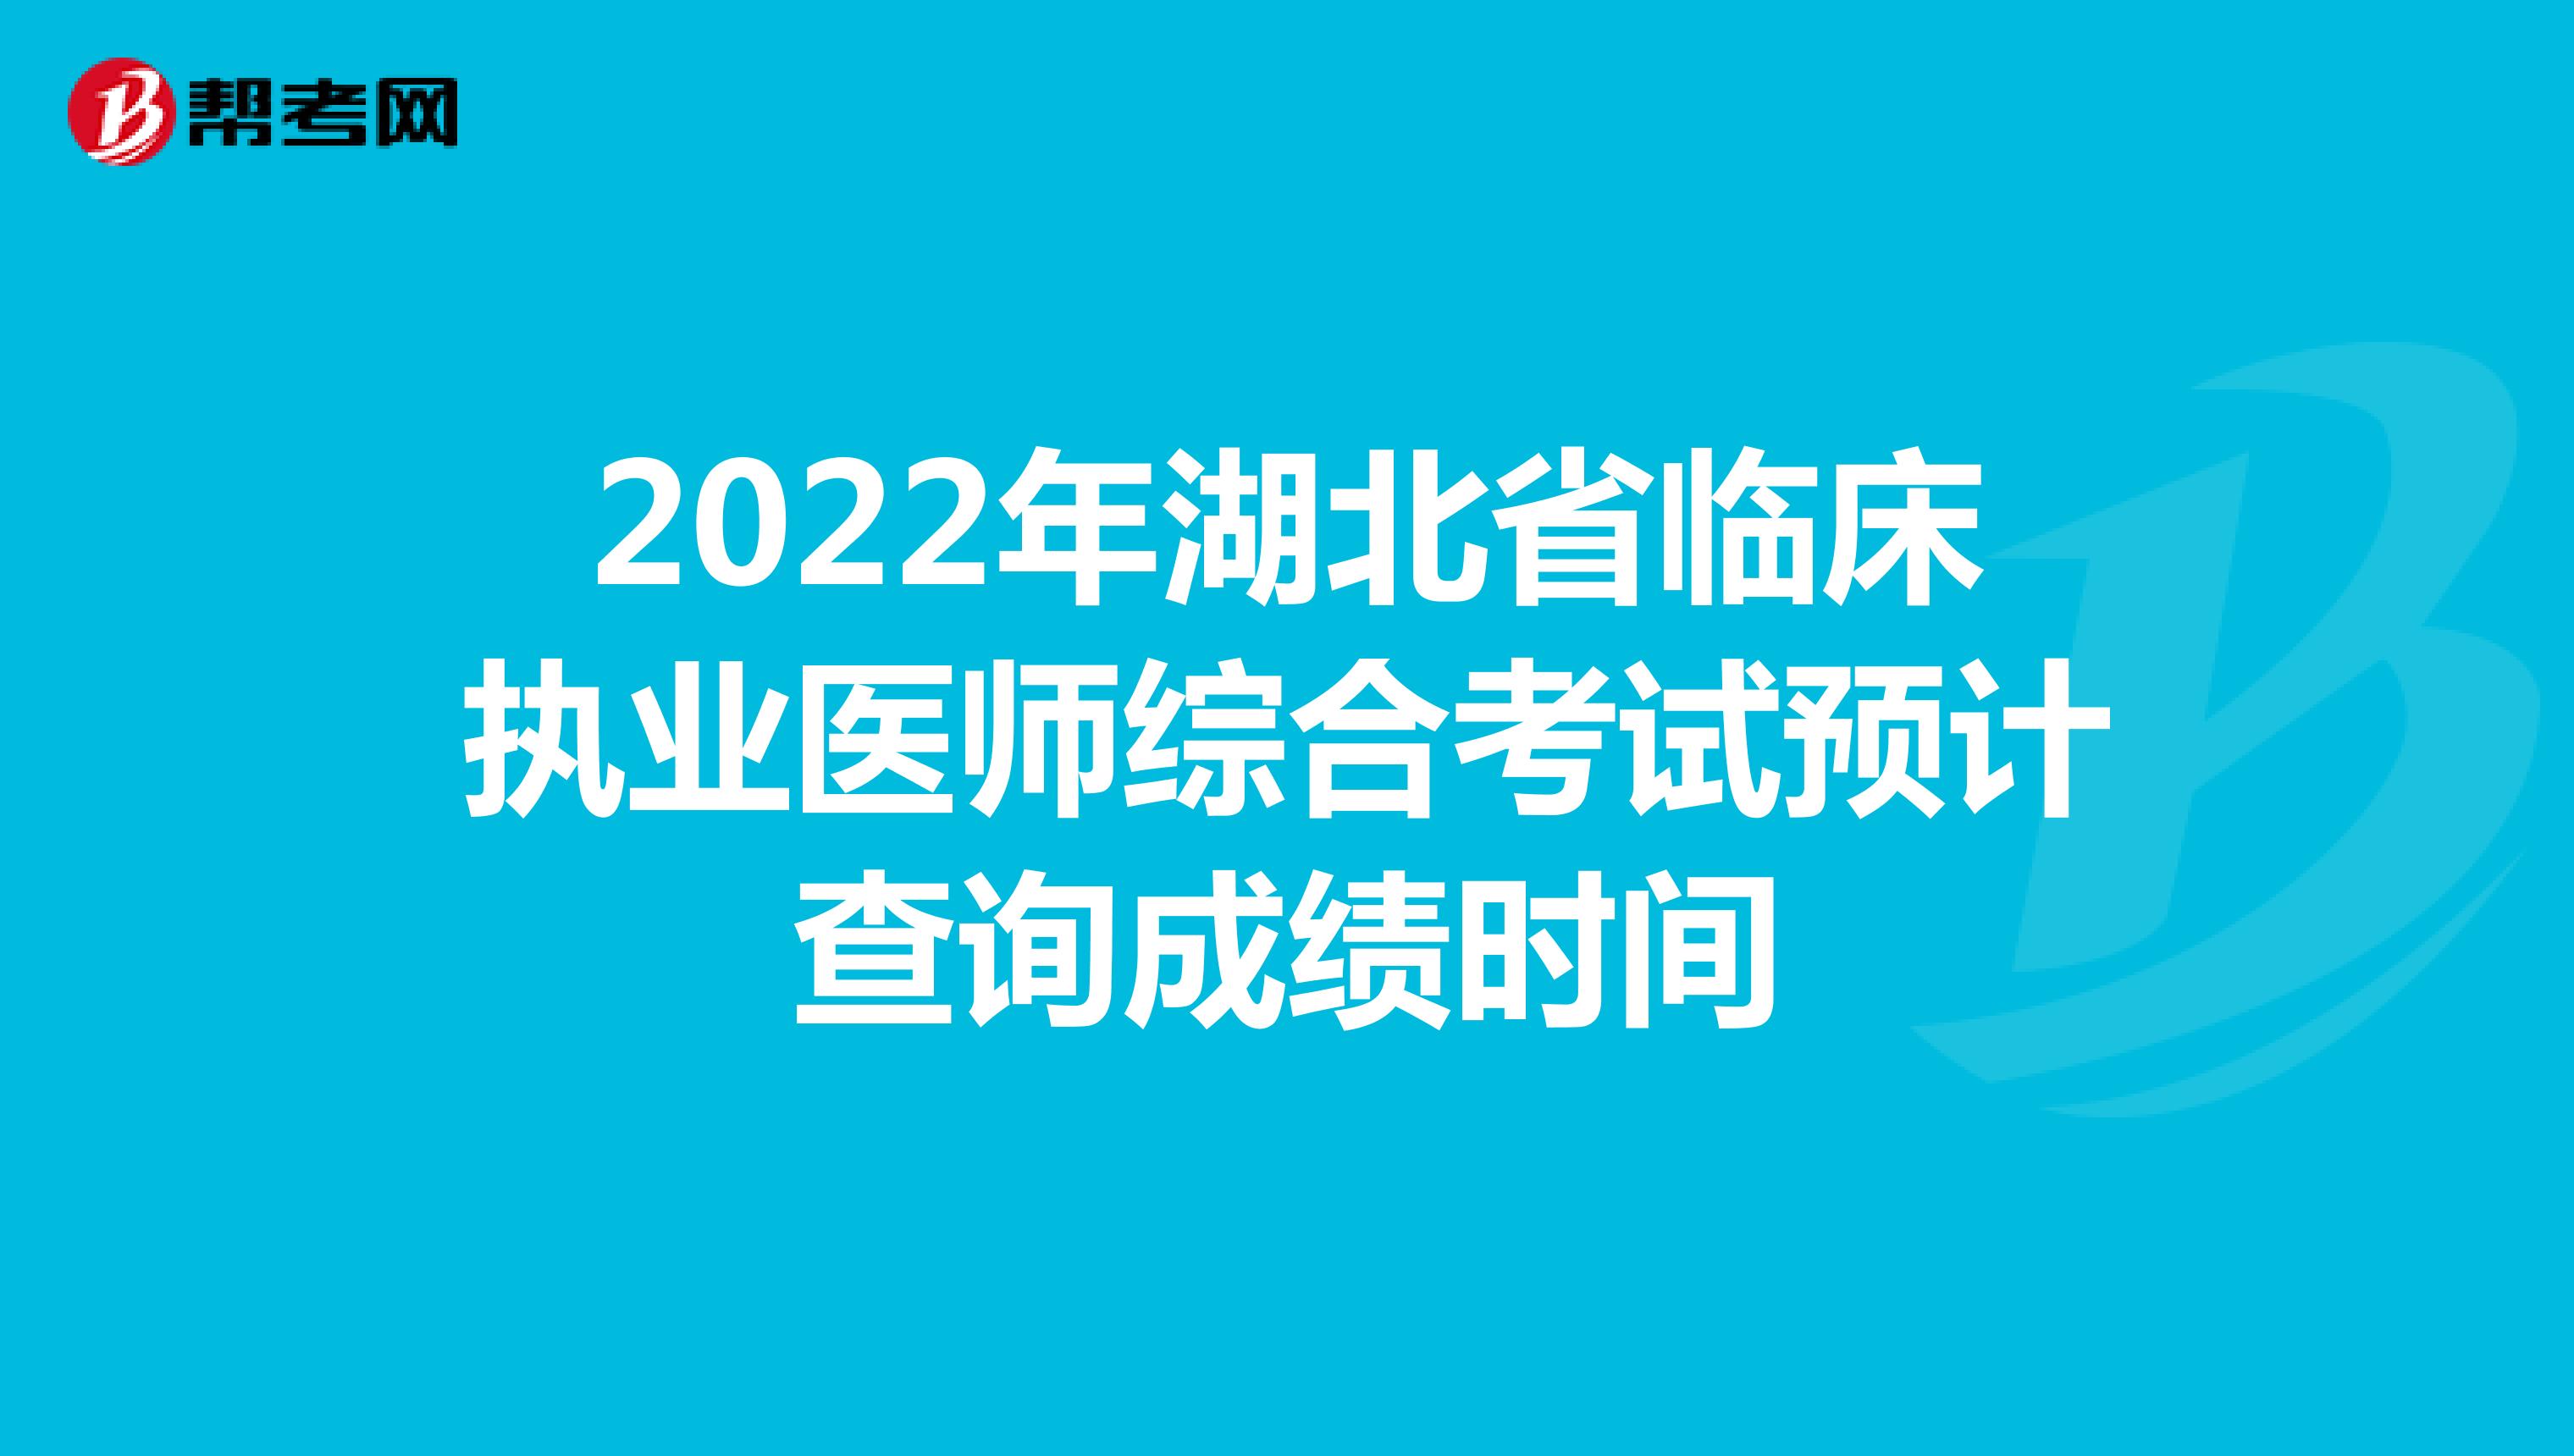 2022年湖北省临床执业医师综合考试预计查询成绩时间